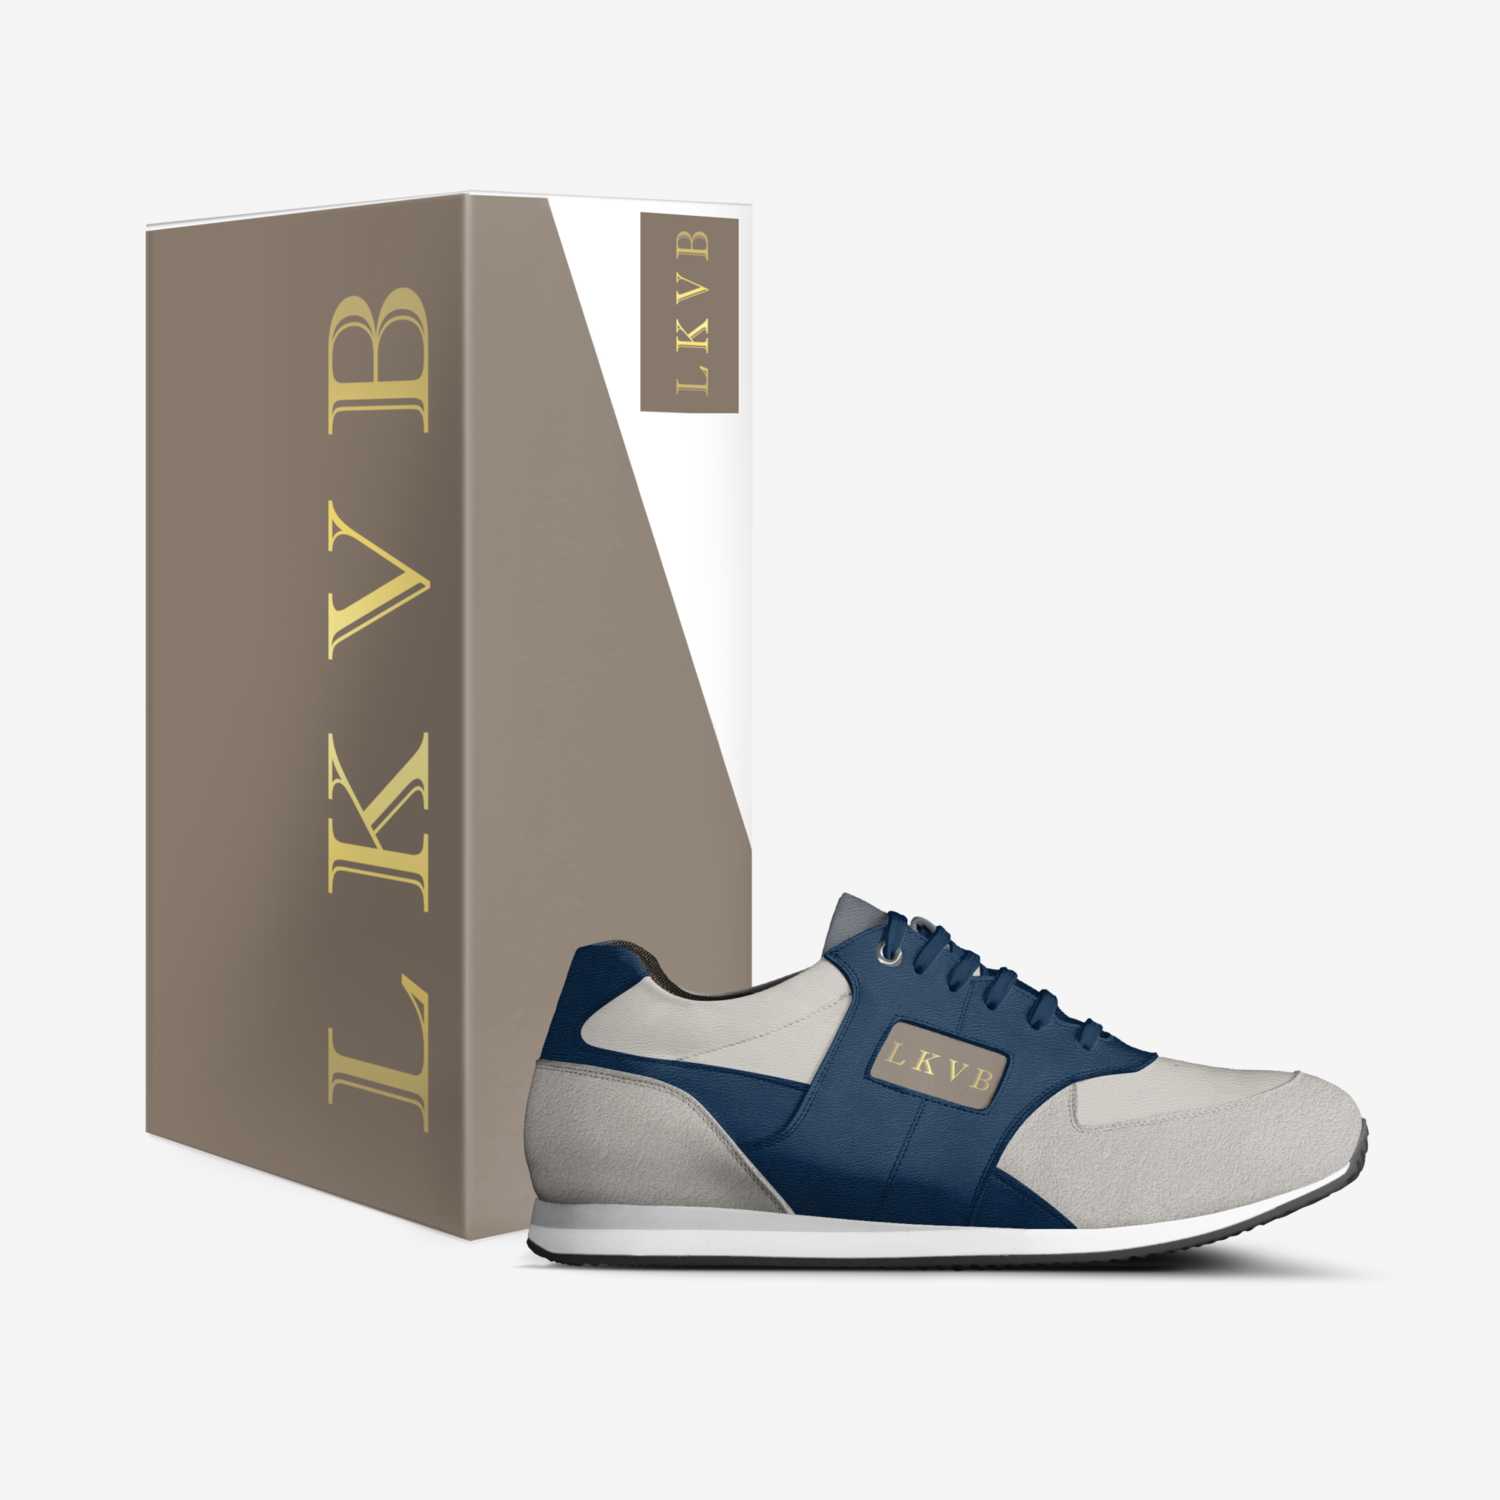 L K V B  custom made in Italy shoes by Lorraine Kleering van Beerenbergh | Box view